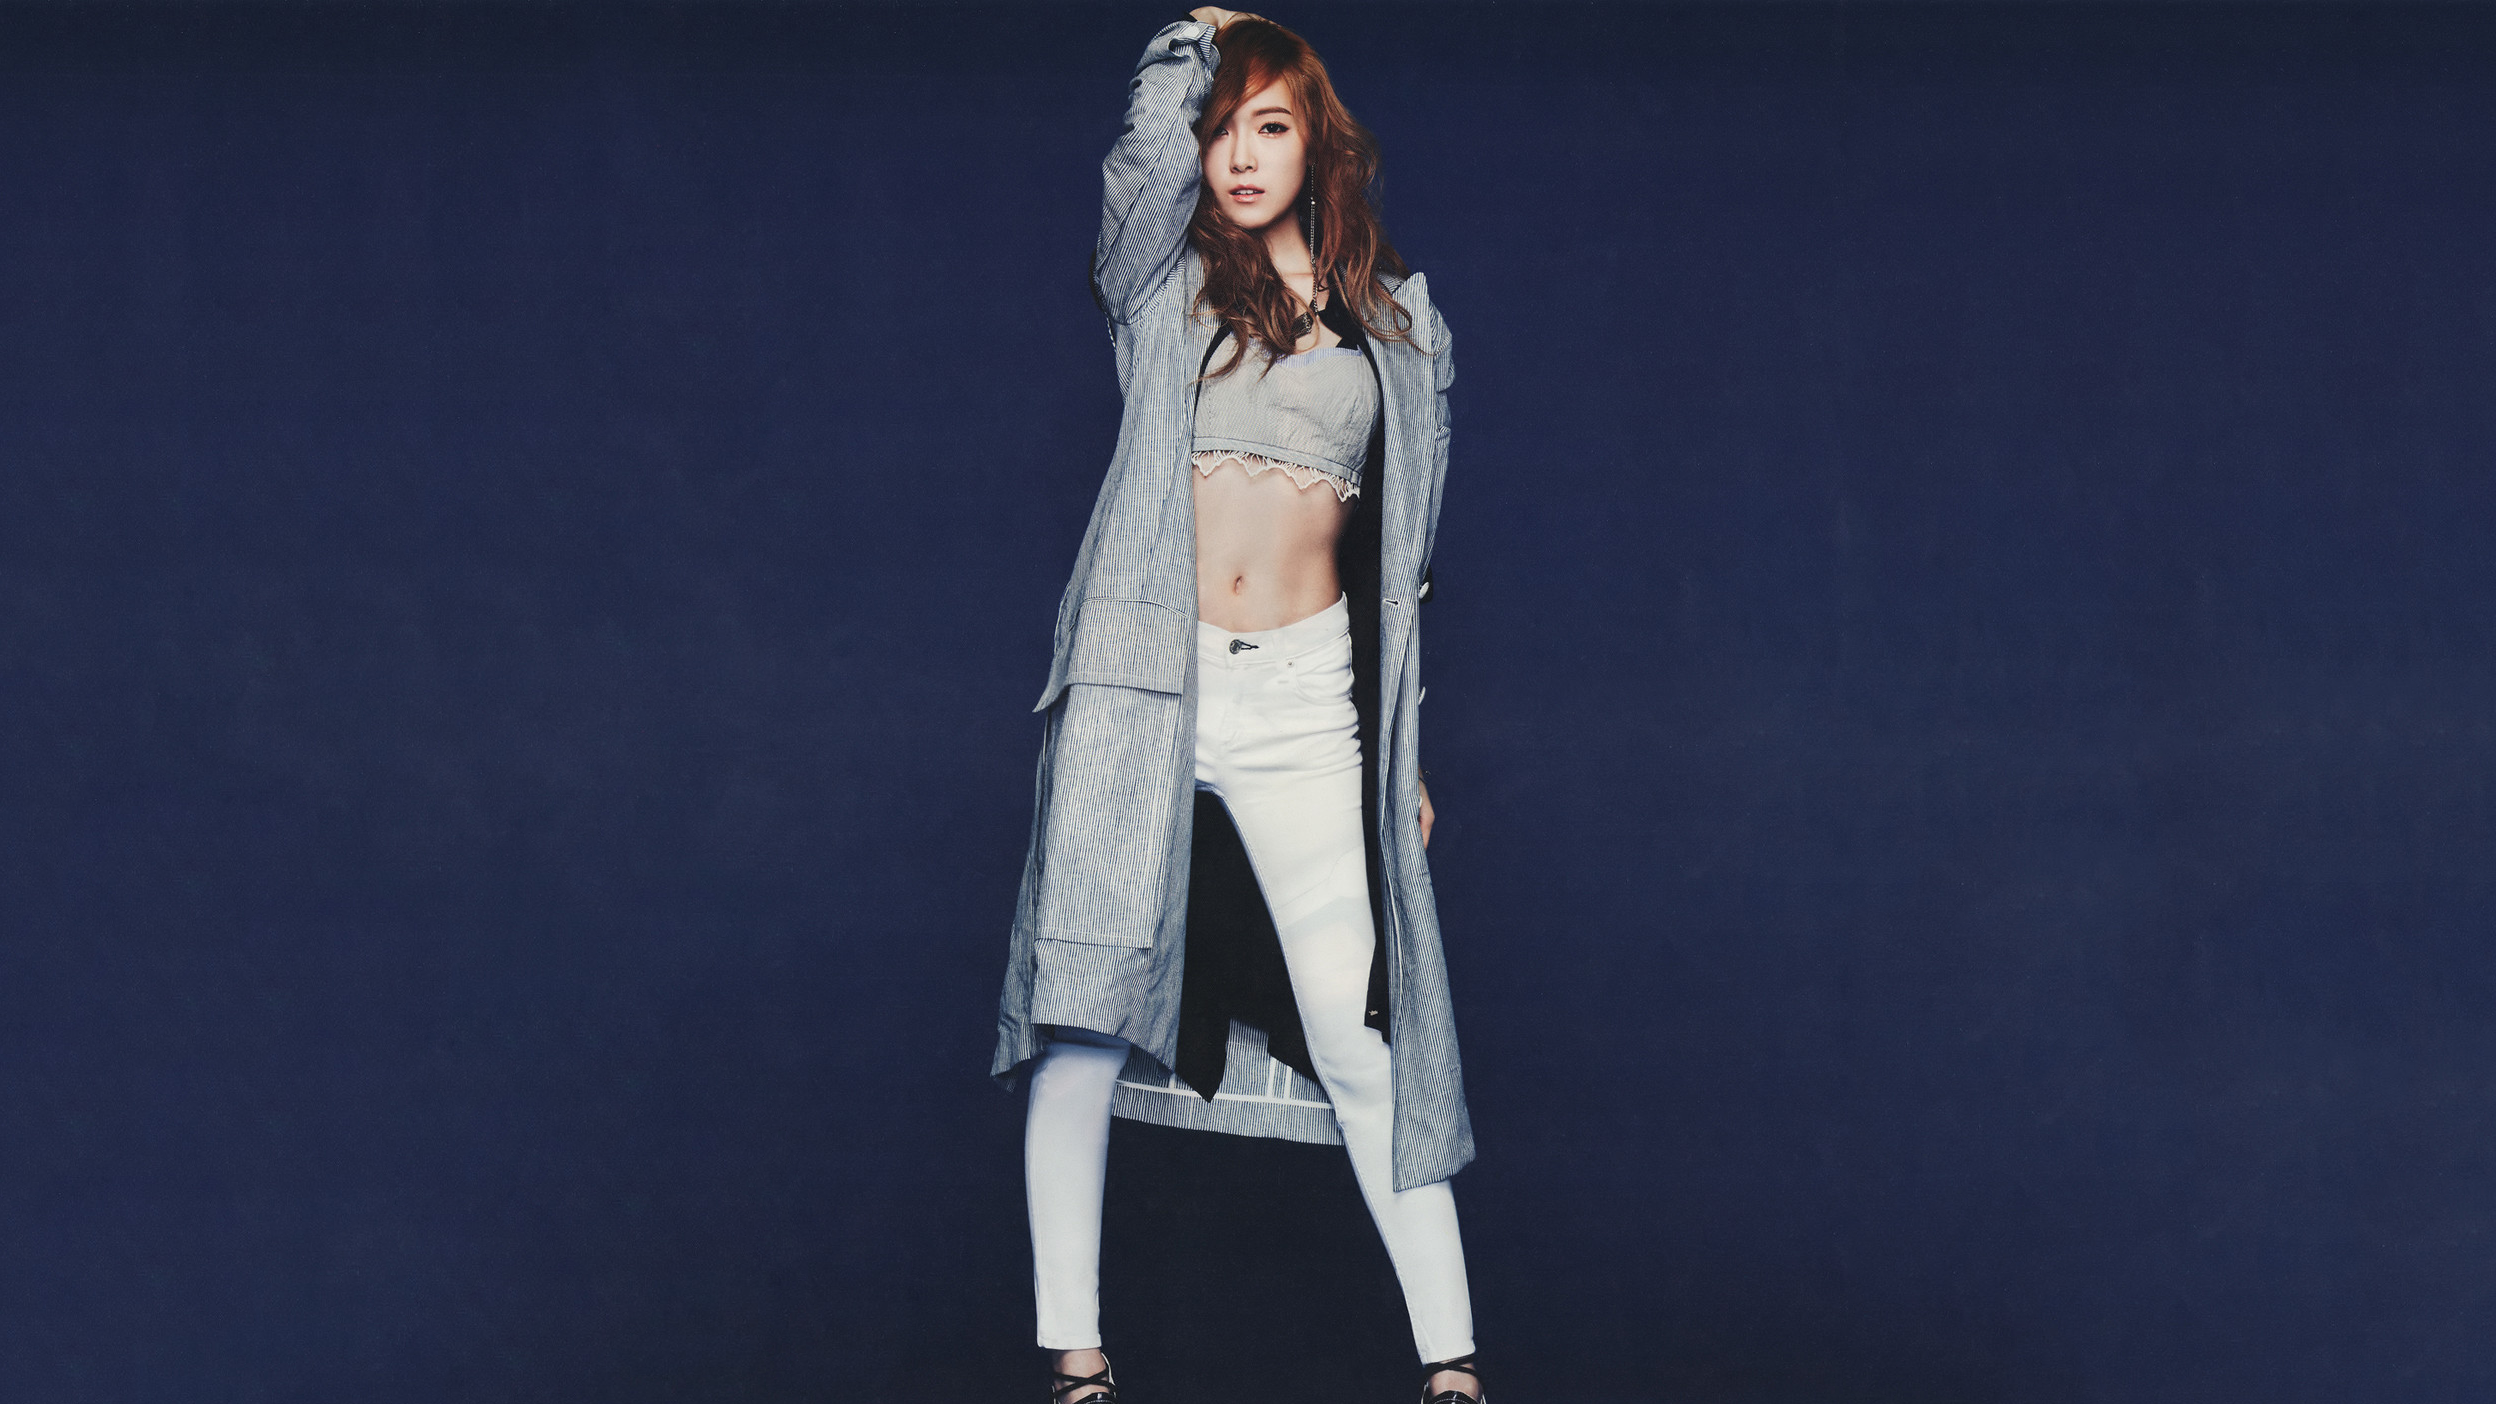 Jessica Jung SNSD Korean K Pop Asian Arms Up Blue Background Women Model 2496x1404